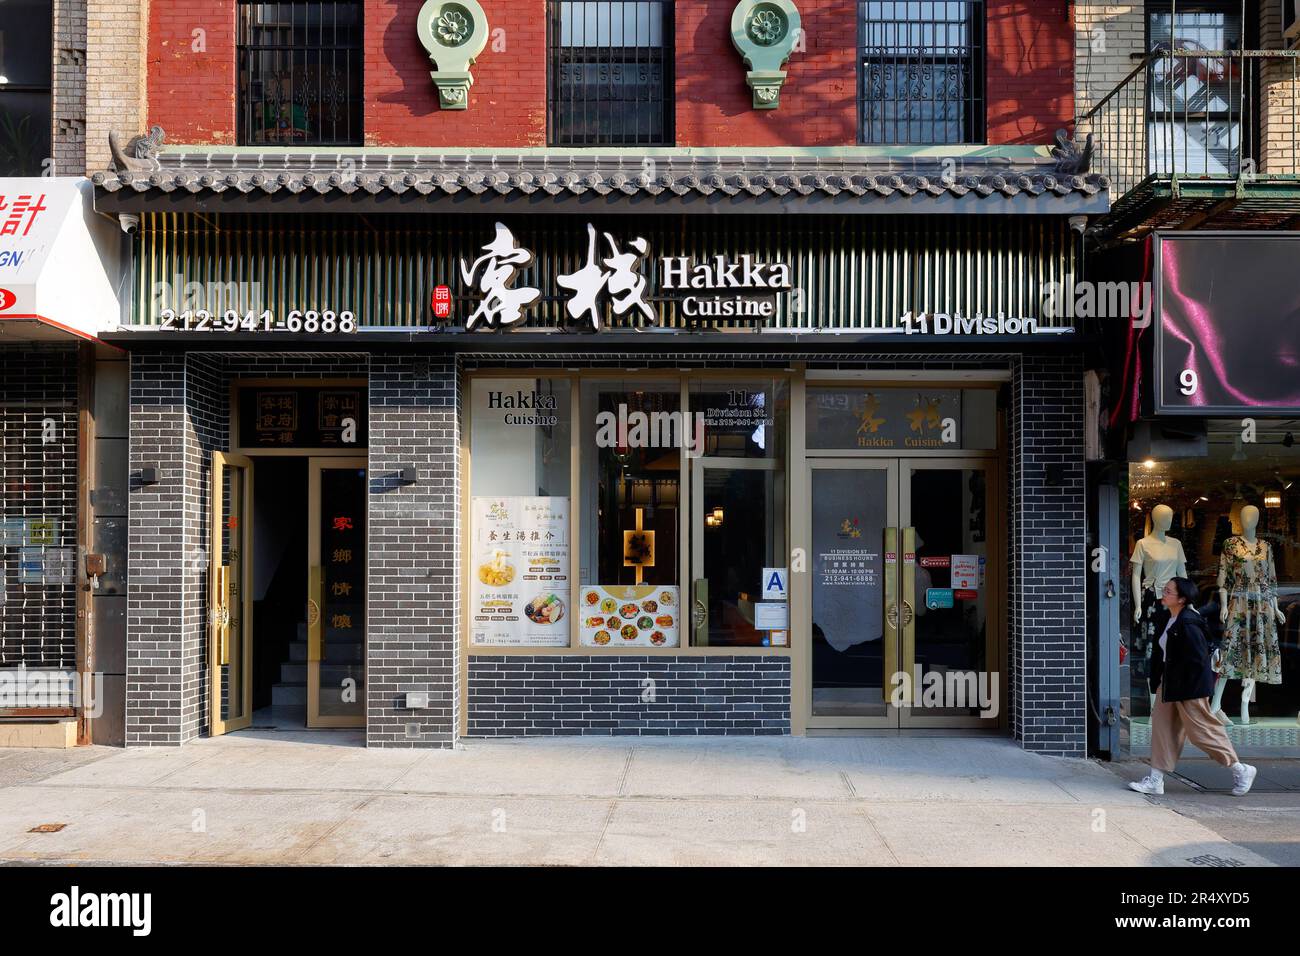 Hakka cuisine 客棧, 11 Division St, New York, New York, New York, boutique d'un restaurant chinois Hakka dans le quartier chinois de Manhattan. Banque D'Images